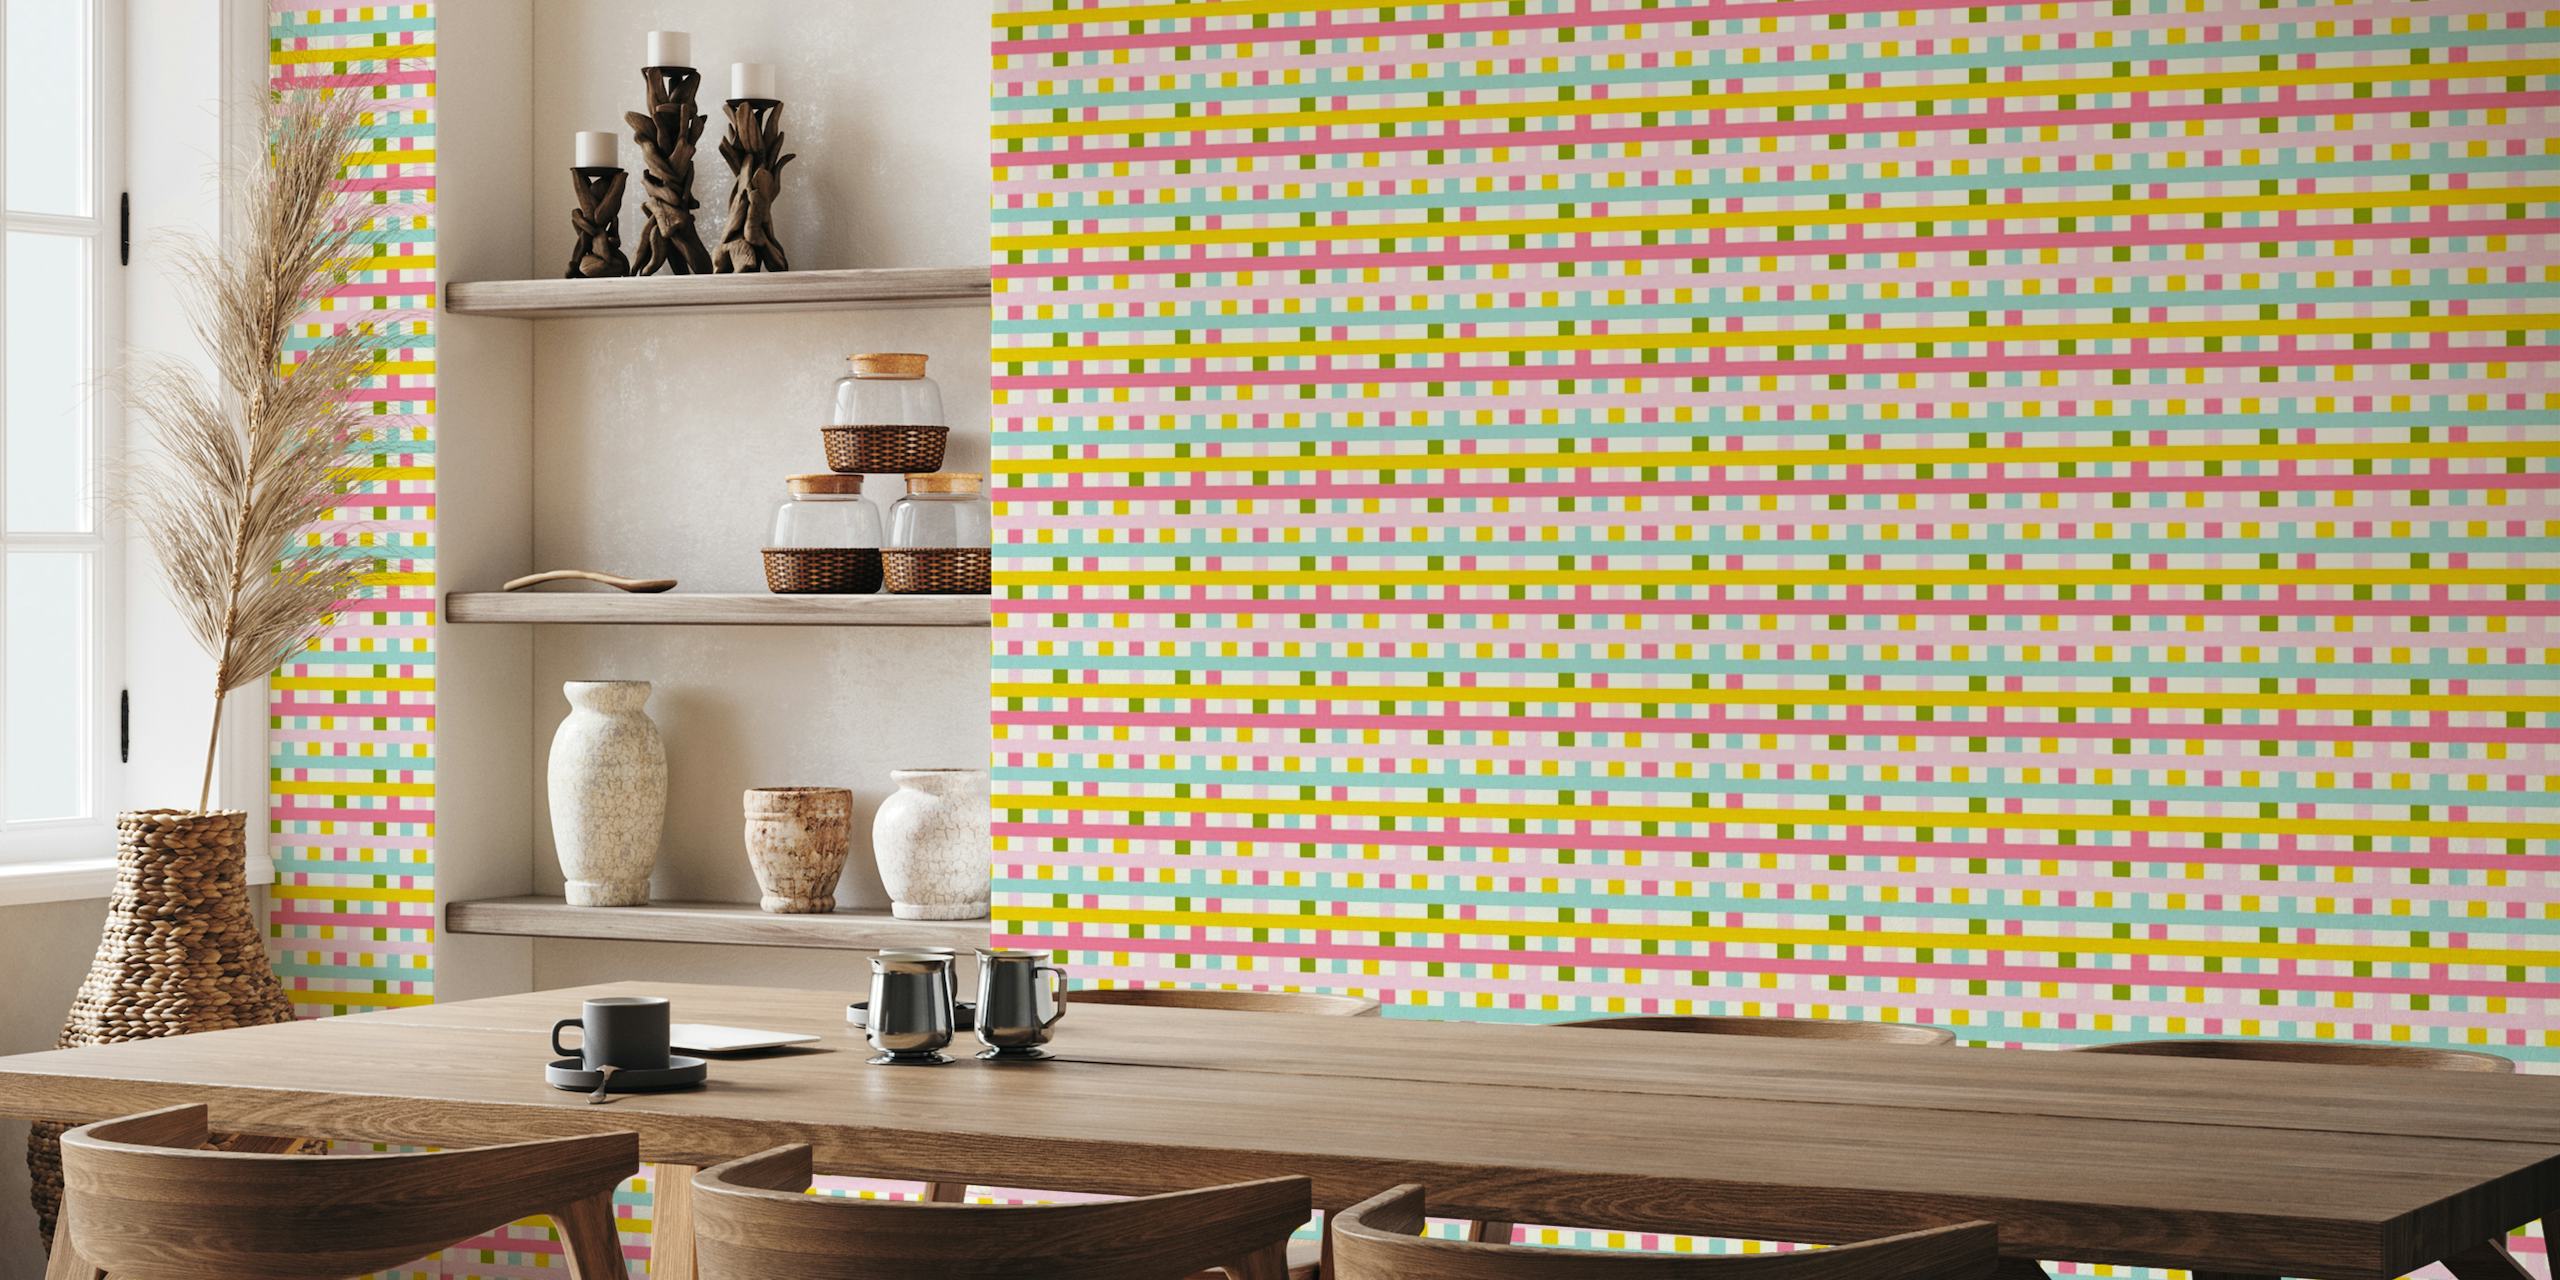 Fotomural vinílico de parede colorido com padrão xadrez e quadrados rosa pastel, azuis, amarelos e verdes